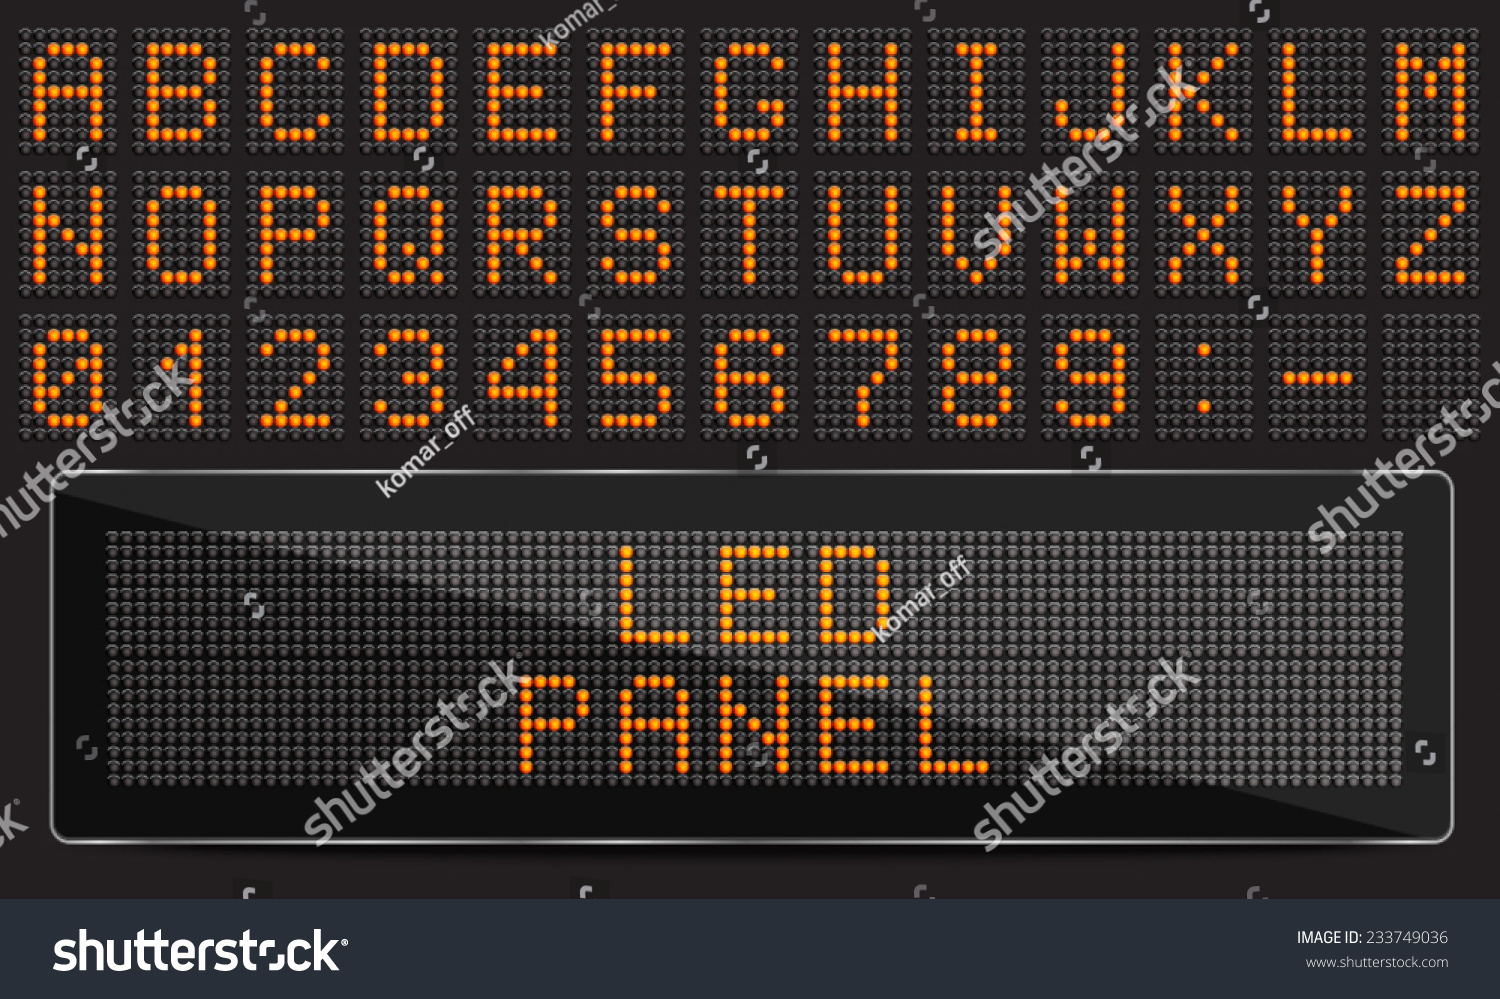 SVG of LED digital font on black background, vector illustration svg